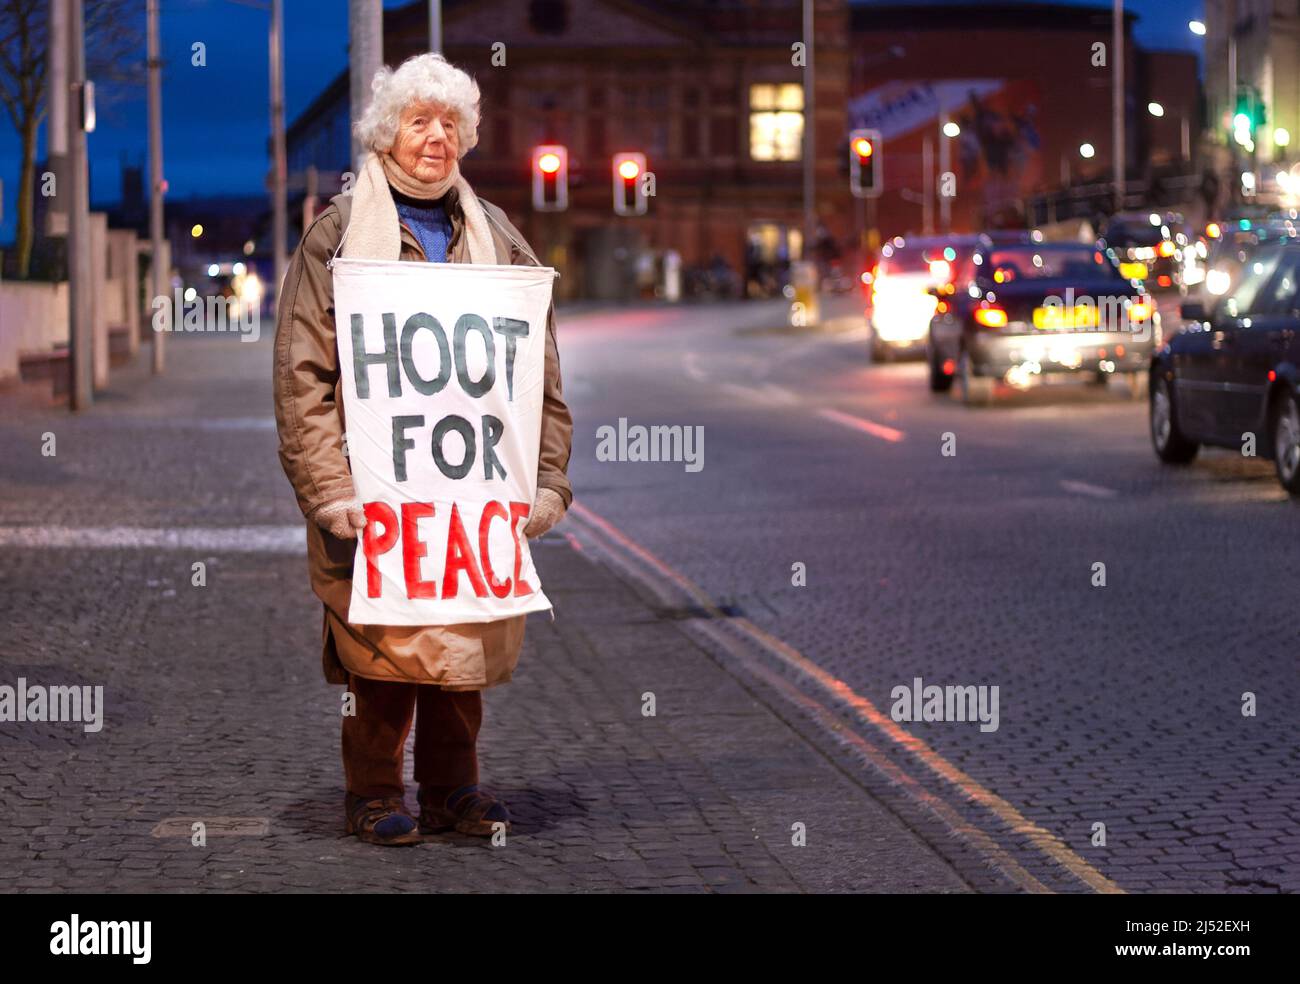 Hoot for Peace, la militante lois Atherden, âgée de 90 ans, attend à sa place régulière dans le centre-ville de Bristol, au Royaume-Uni, face aux chauffeurs venant en sens inverse Banque D'Images